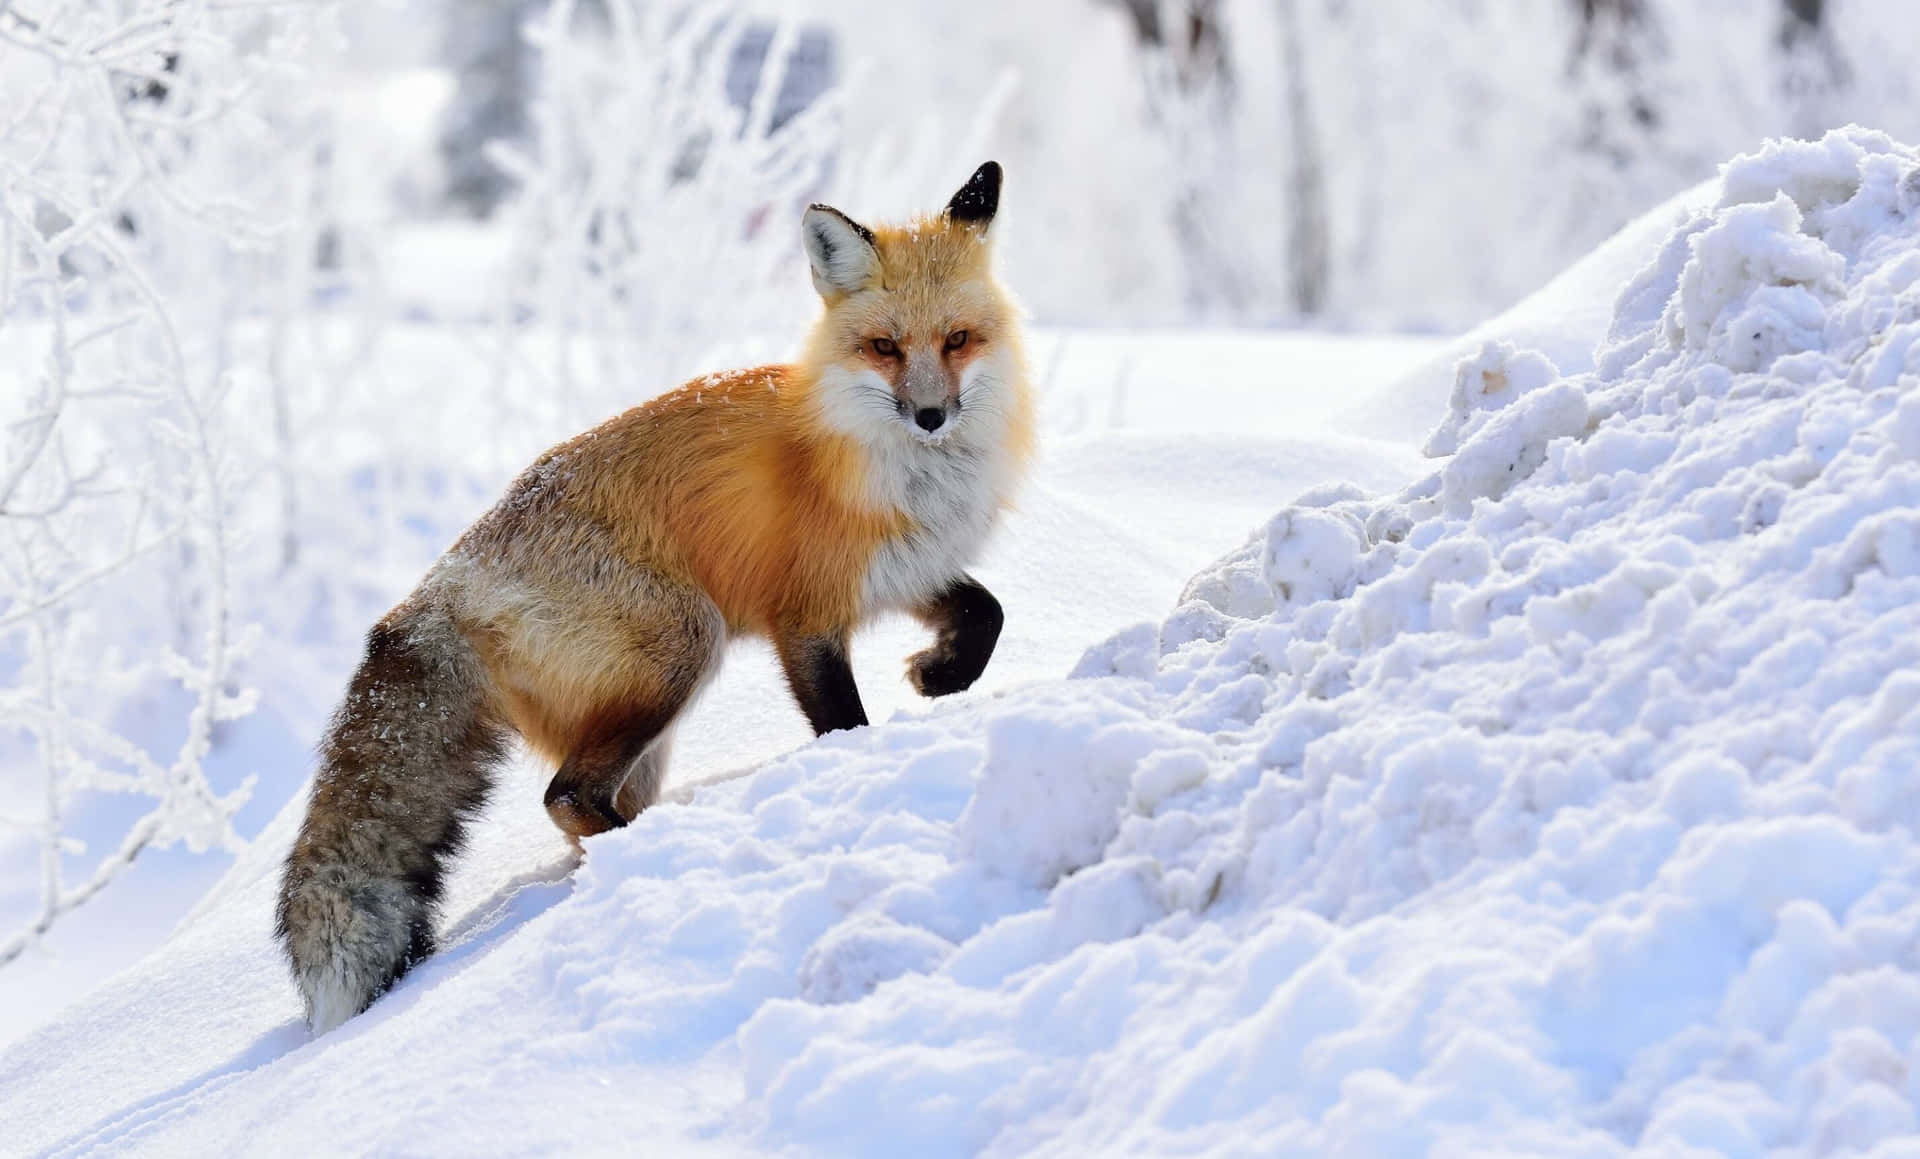 Einroter Fuchs Erkundet Seine Umgebung In Einem Wunderschönen Bewaldeten Gebiet.